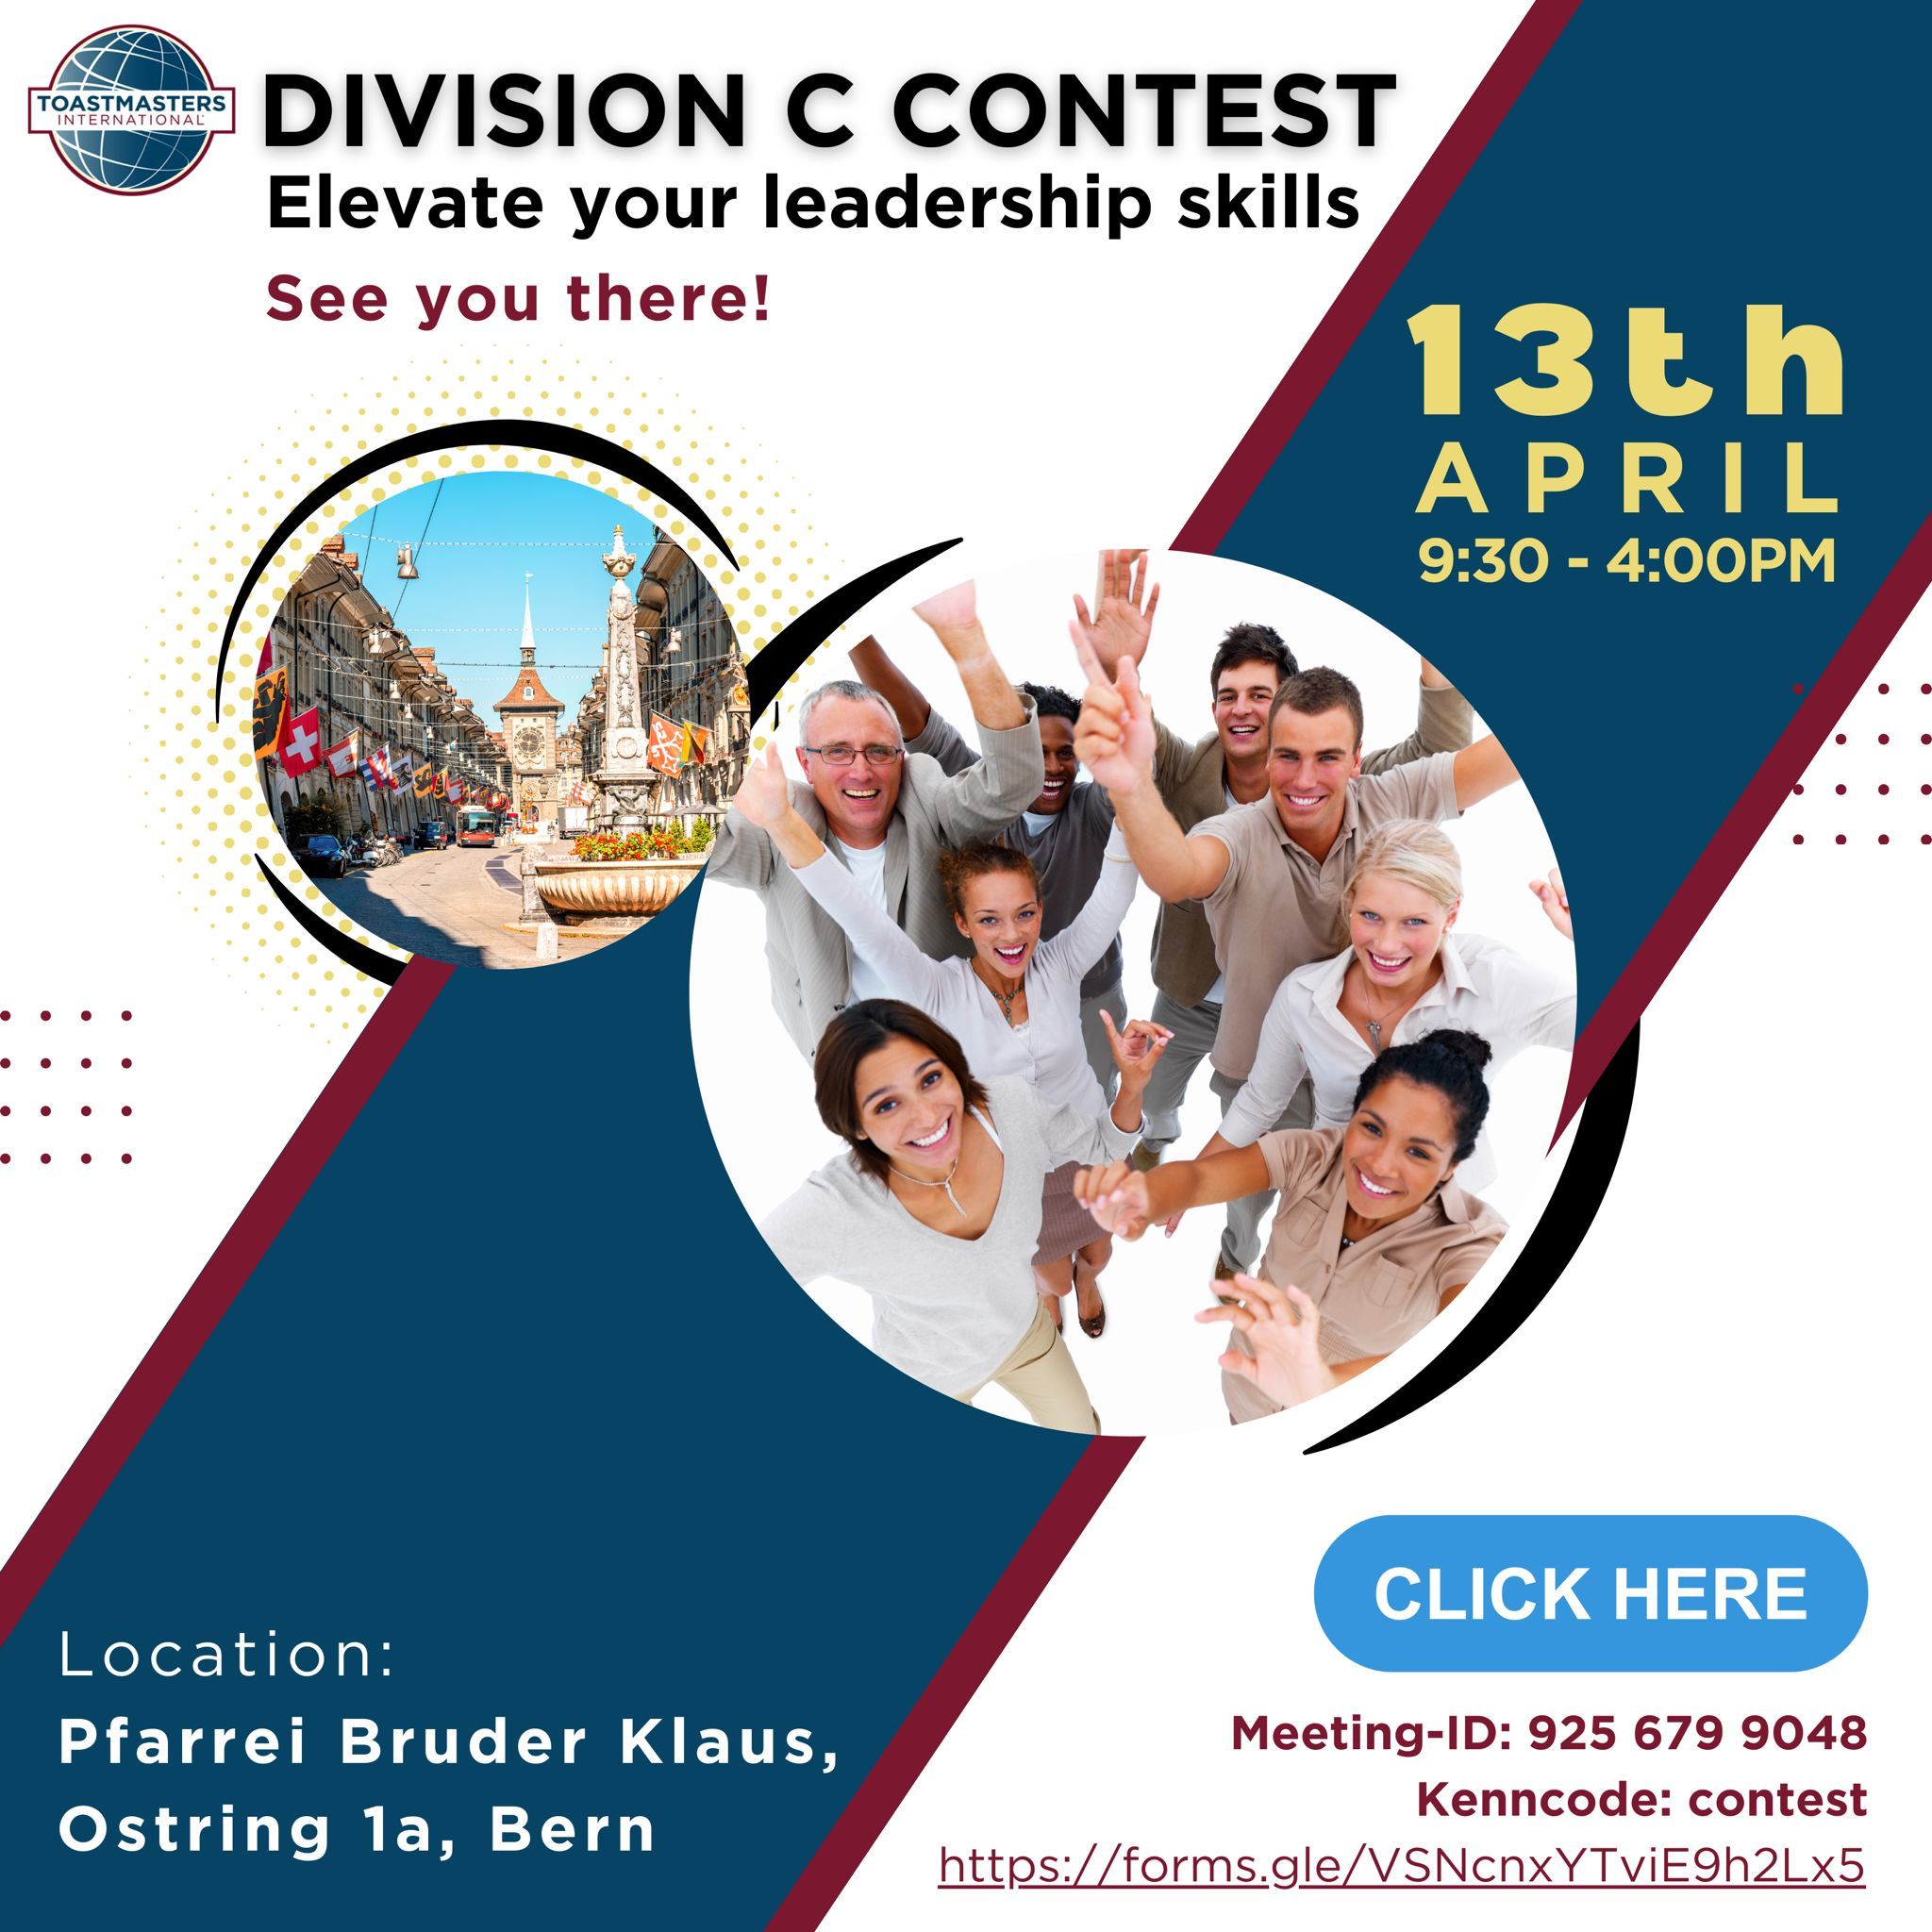 Division C Contest